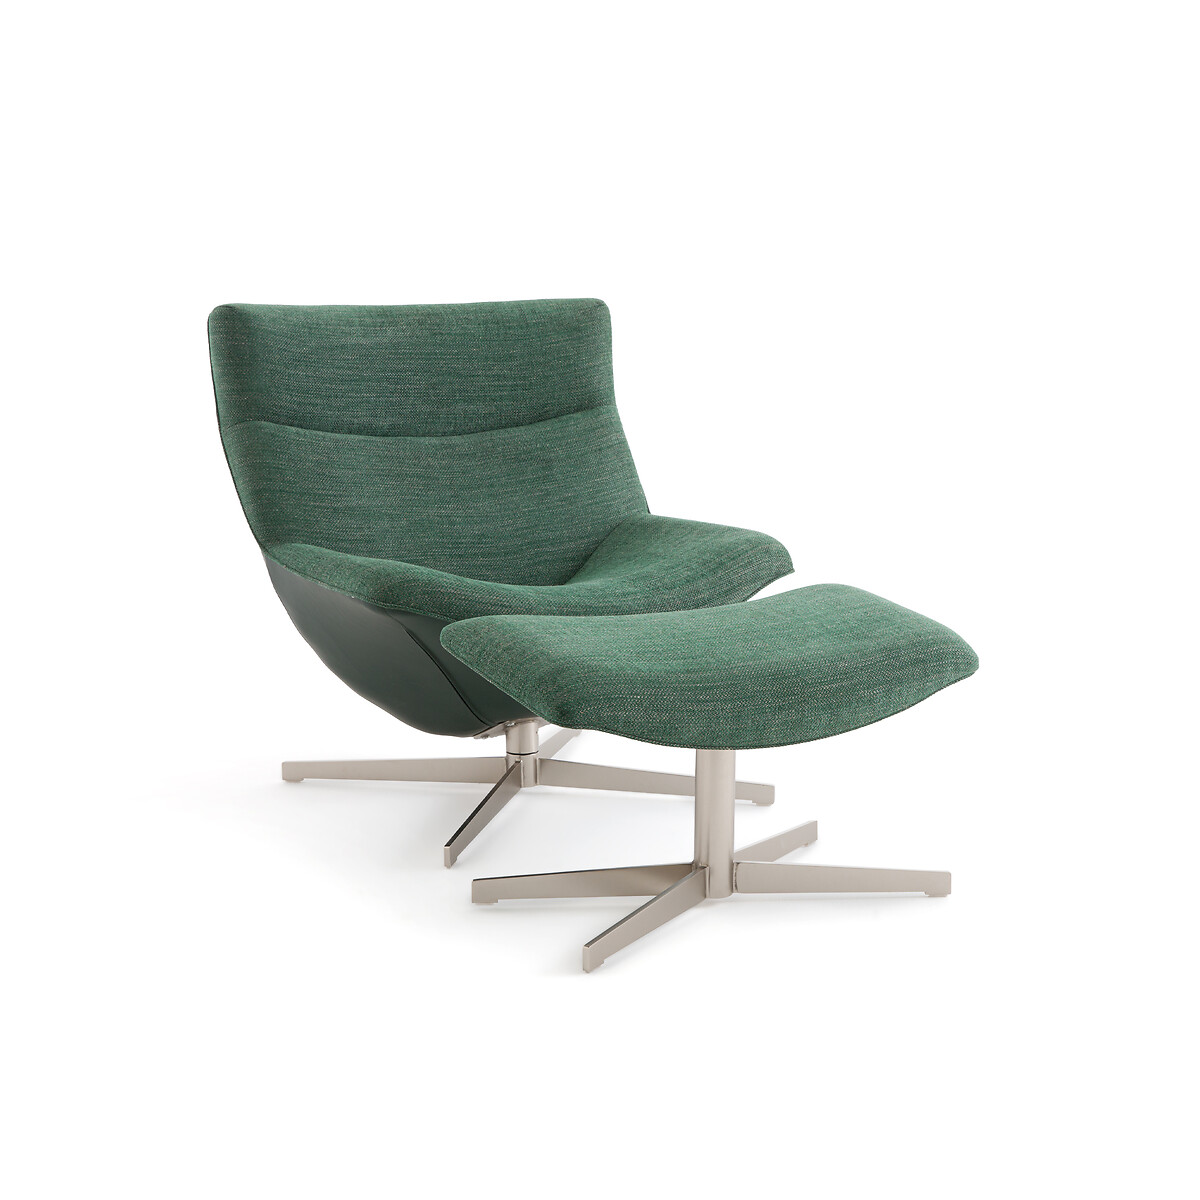 Кресло для релаксации вращающееся с подставкой под ноги Wesley единый размер зеленый